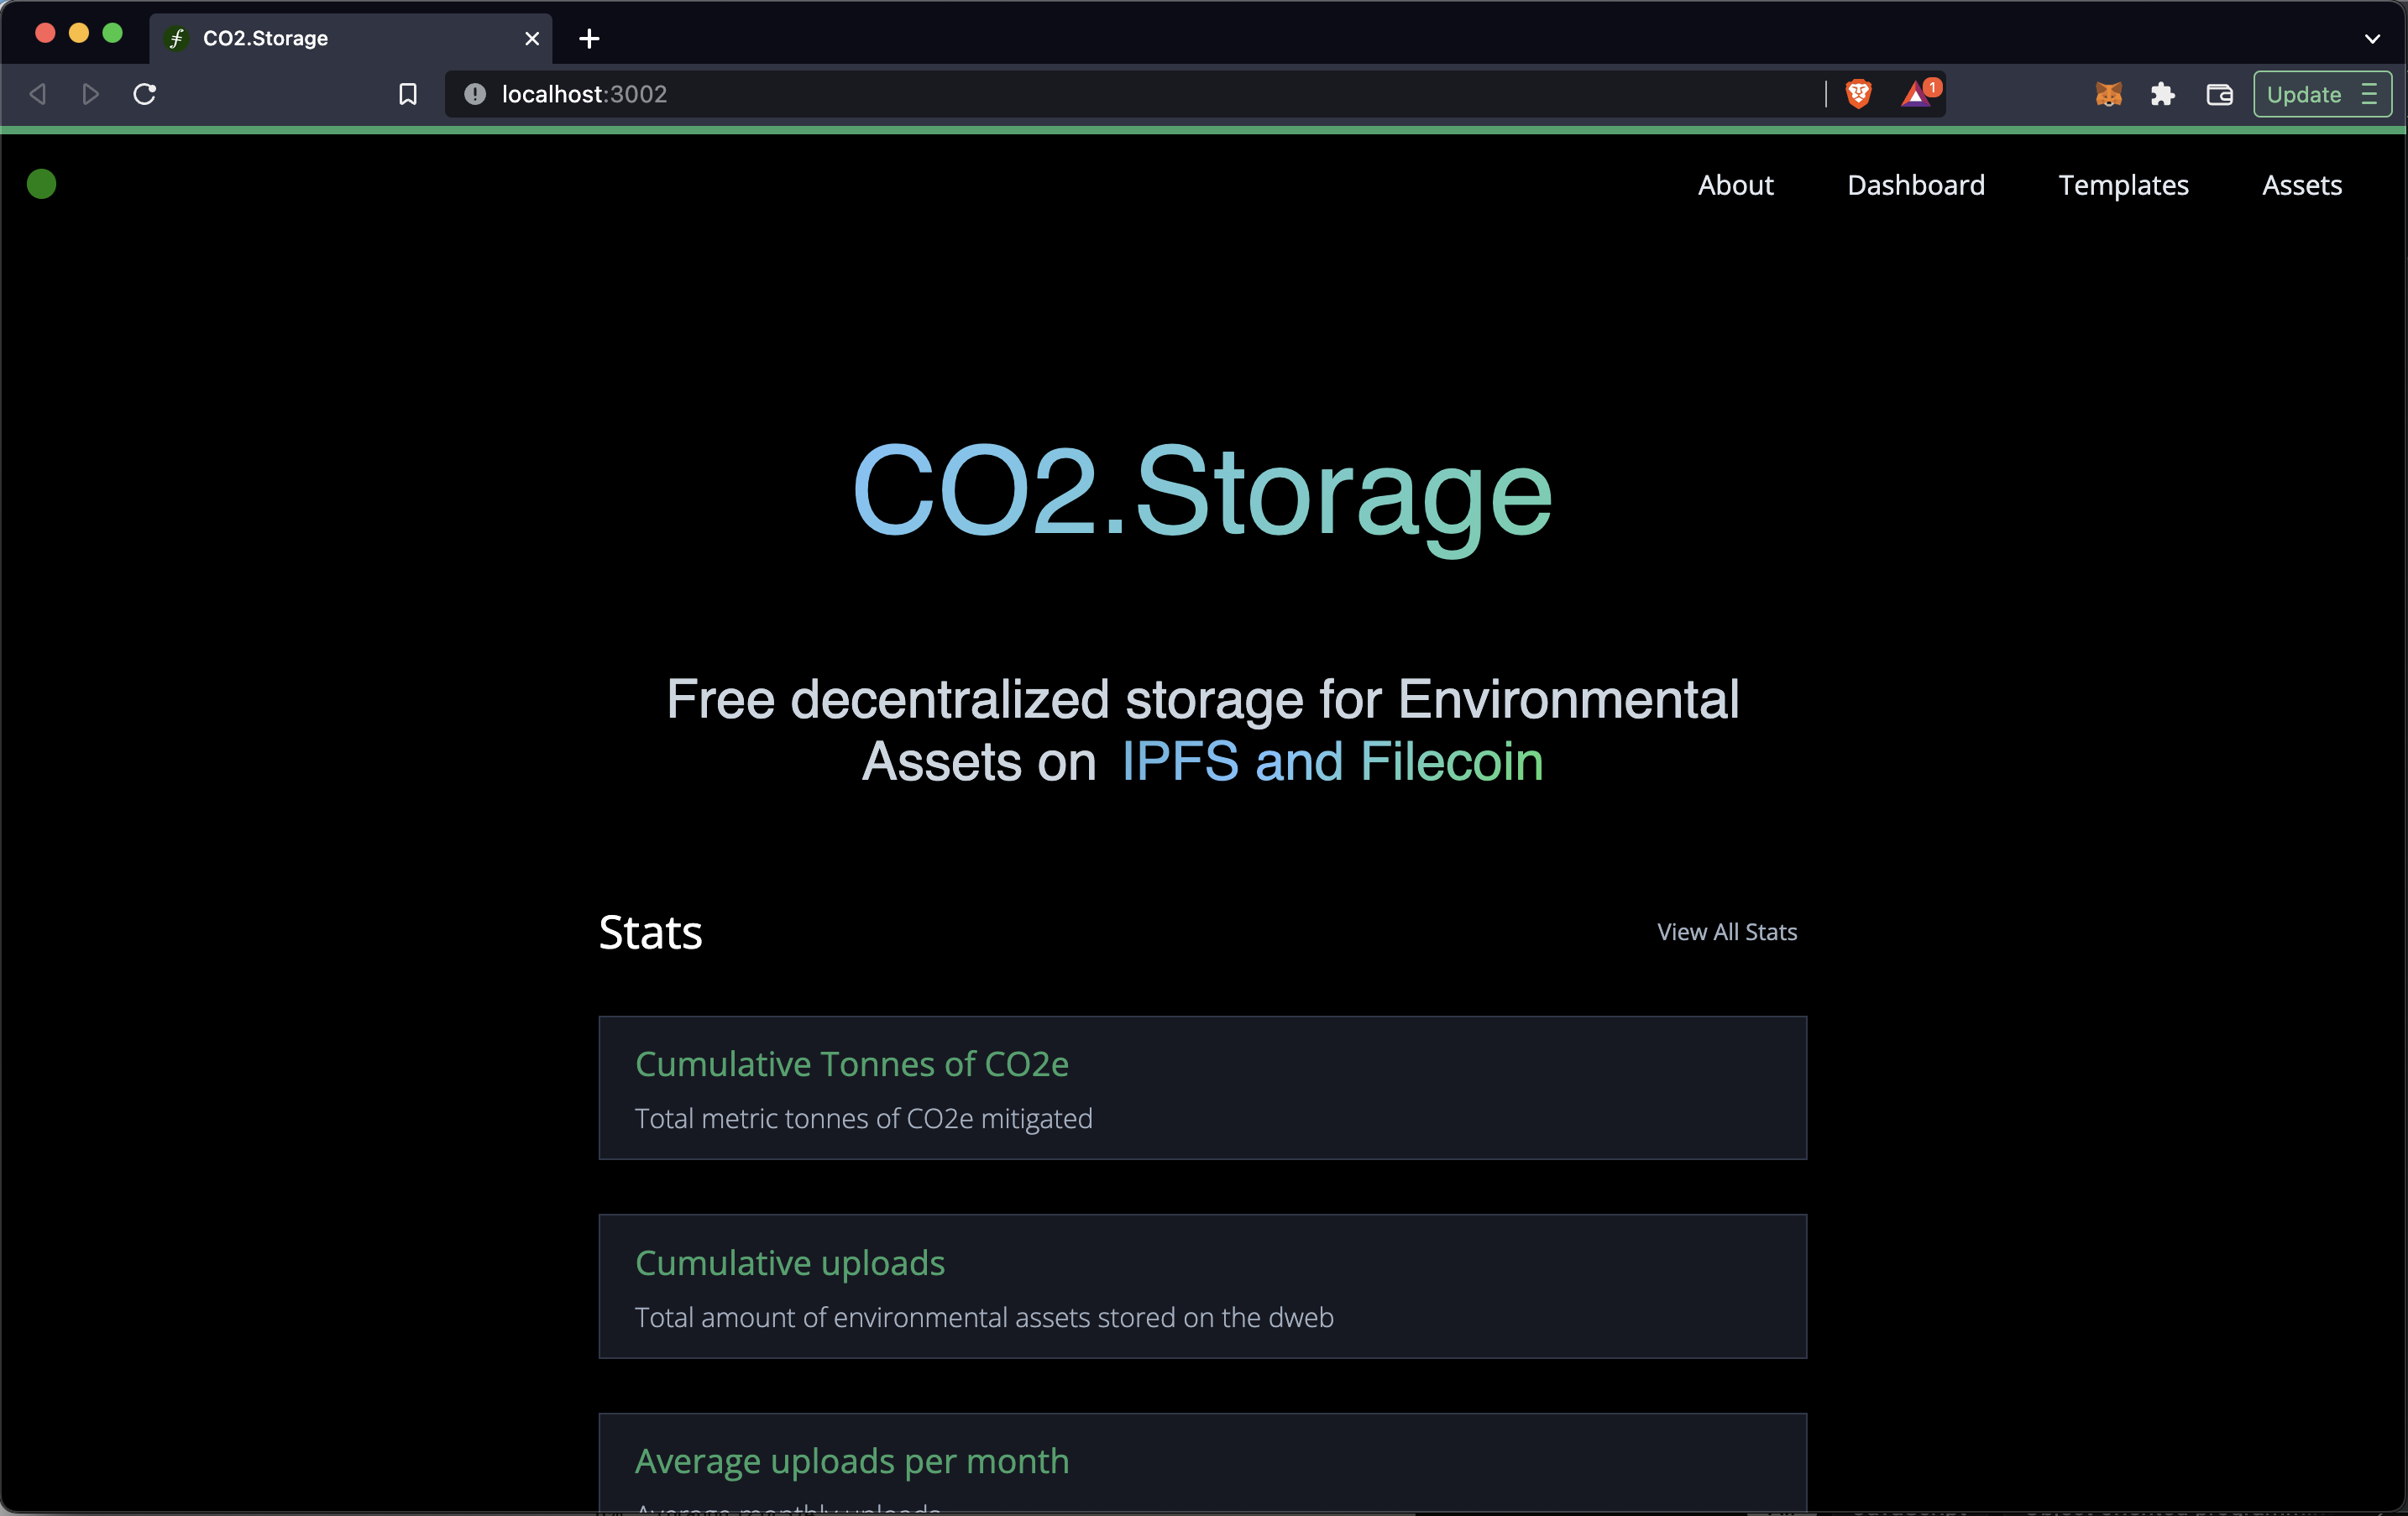 CO2.Storage